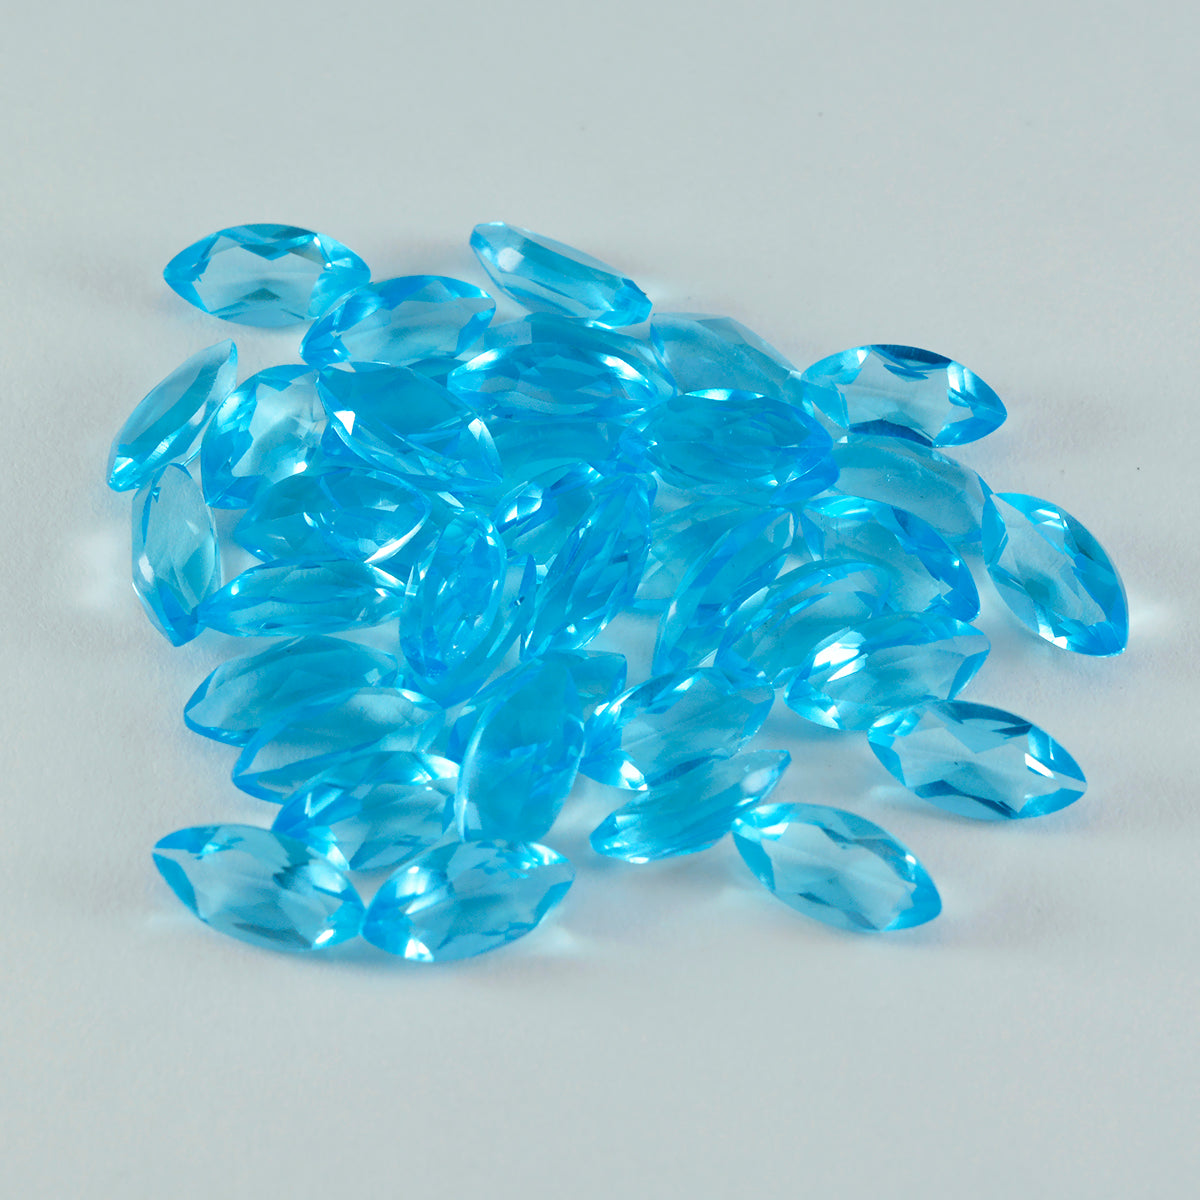 Riyogems 1 Stück blauer Topas, CZ, facettiert, 6 x 12 mm, Marquise-Form, süßer Qualitätsstein